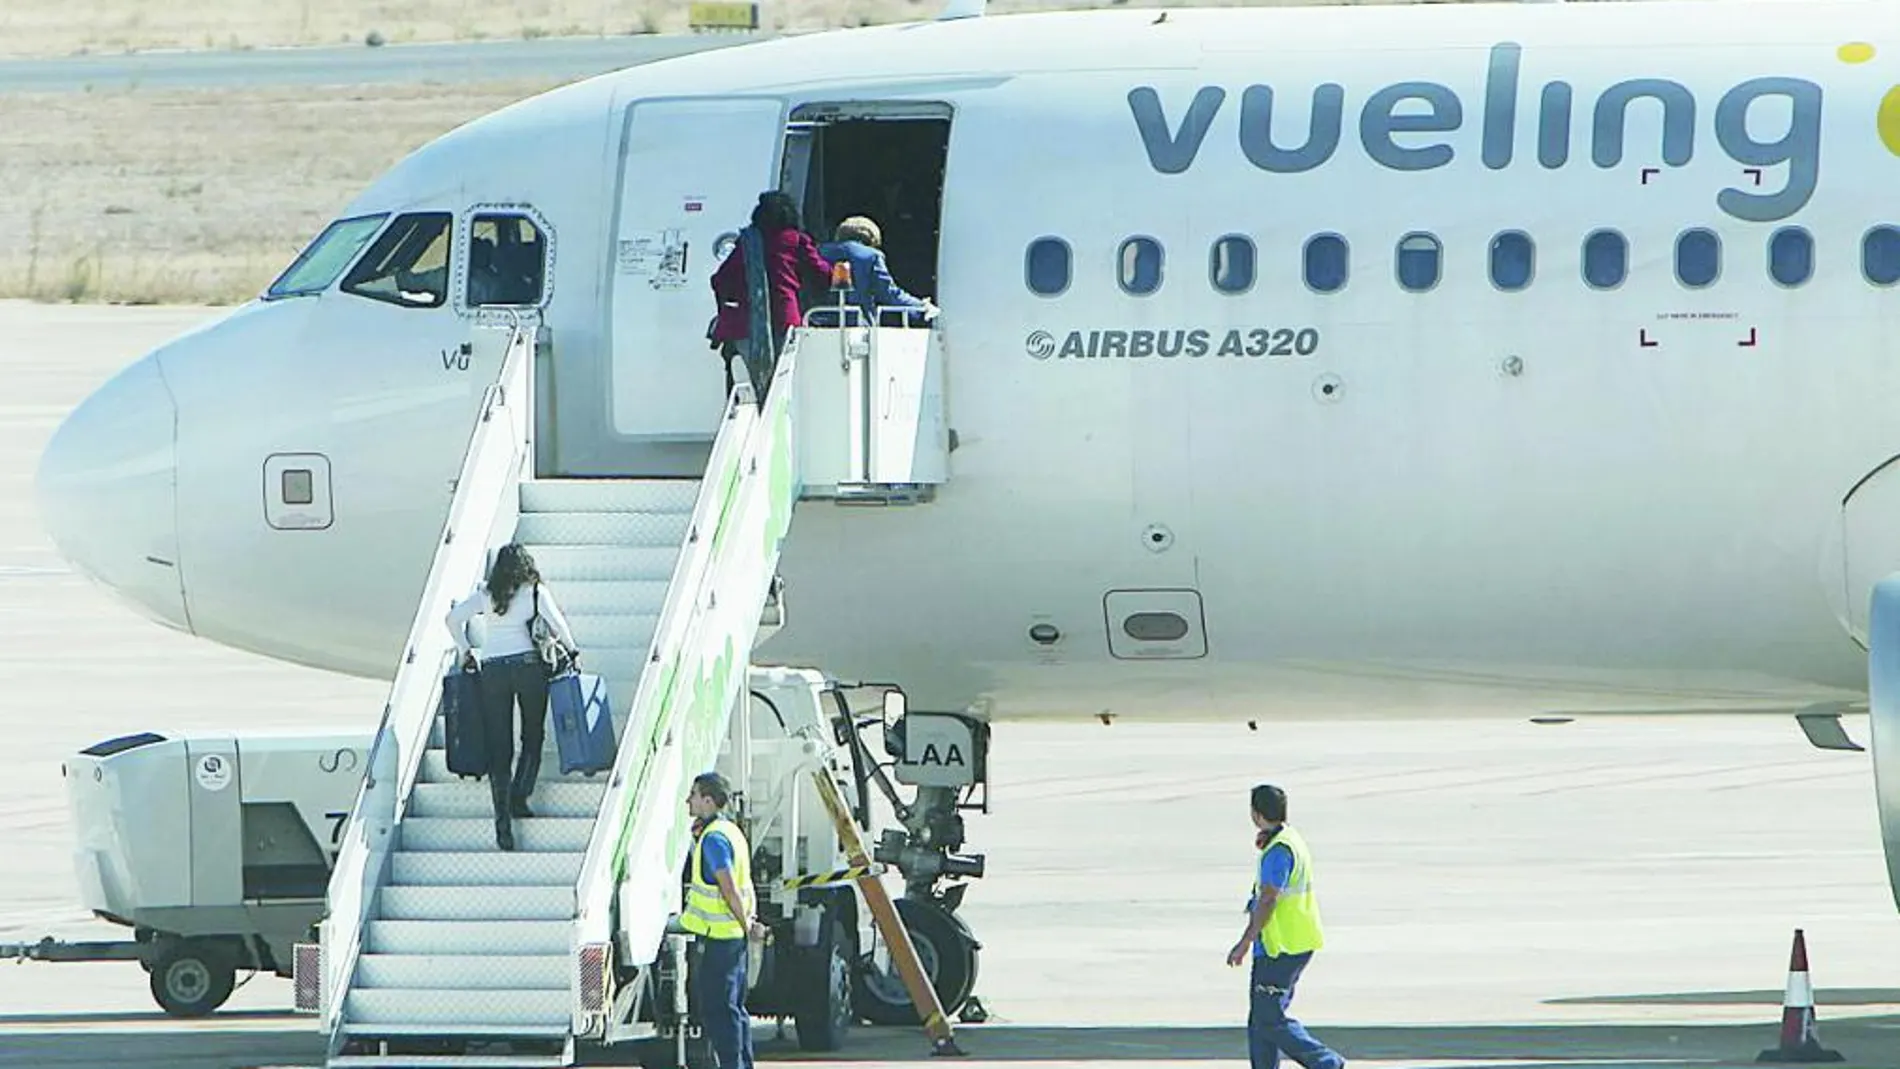 Vueling es la principal compañía «low cost» en el Aeropuerto de El Prat y opera el 33% del tráfico total